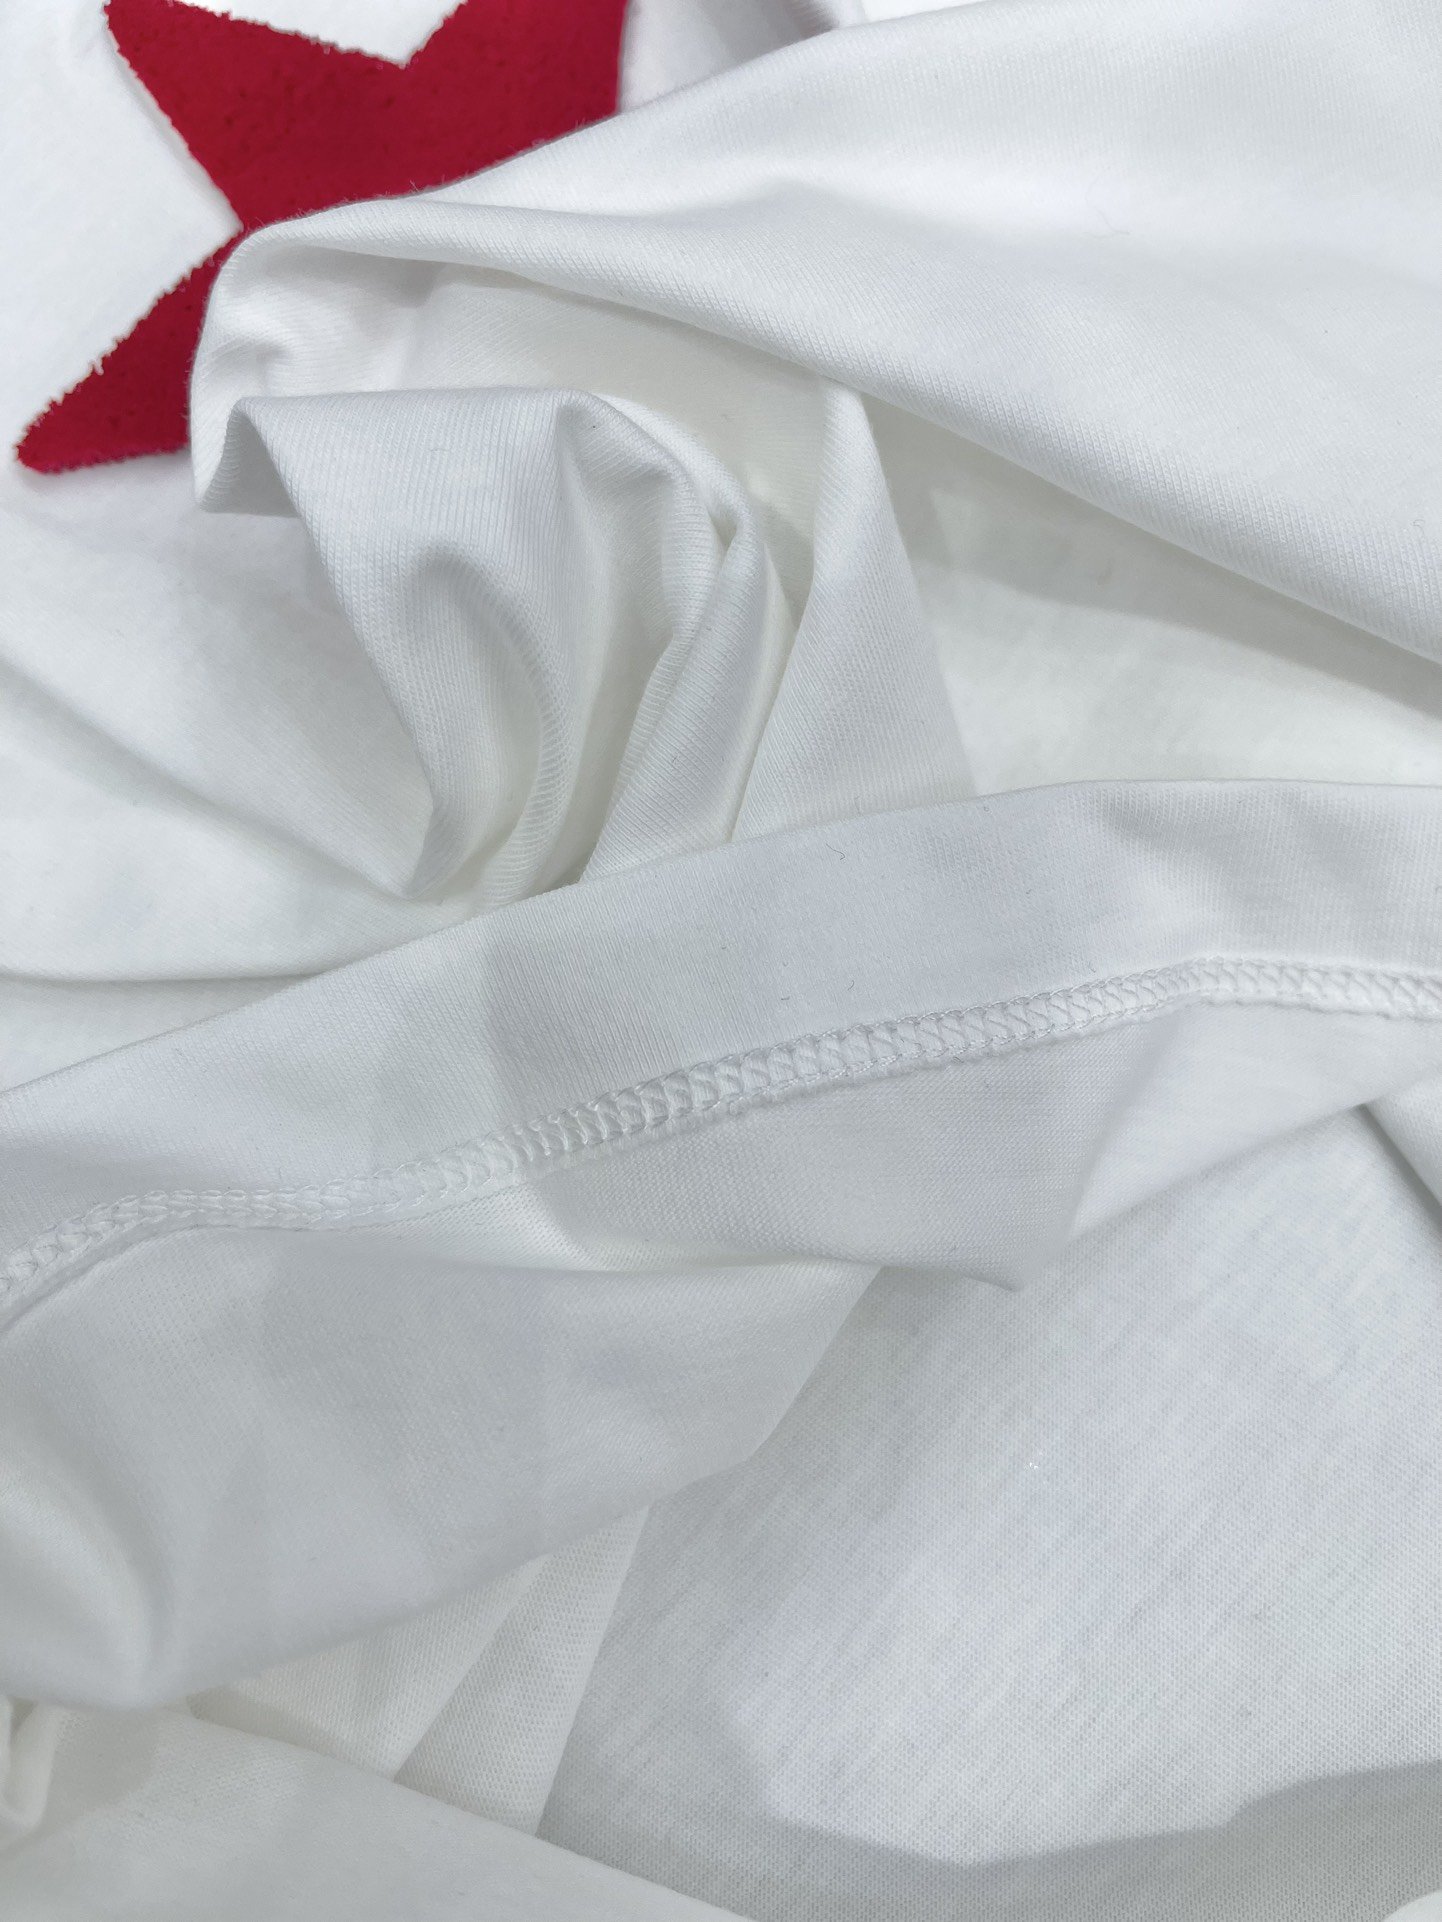 *迪奥这款短袖采用了优质棉质面料柔软透气贴身穿着超级舒服.精致的DiorLogo设计简洁大方彰显出低调的